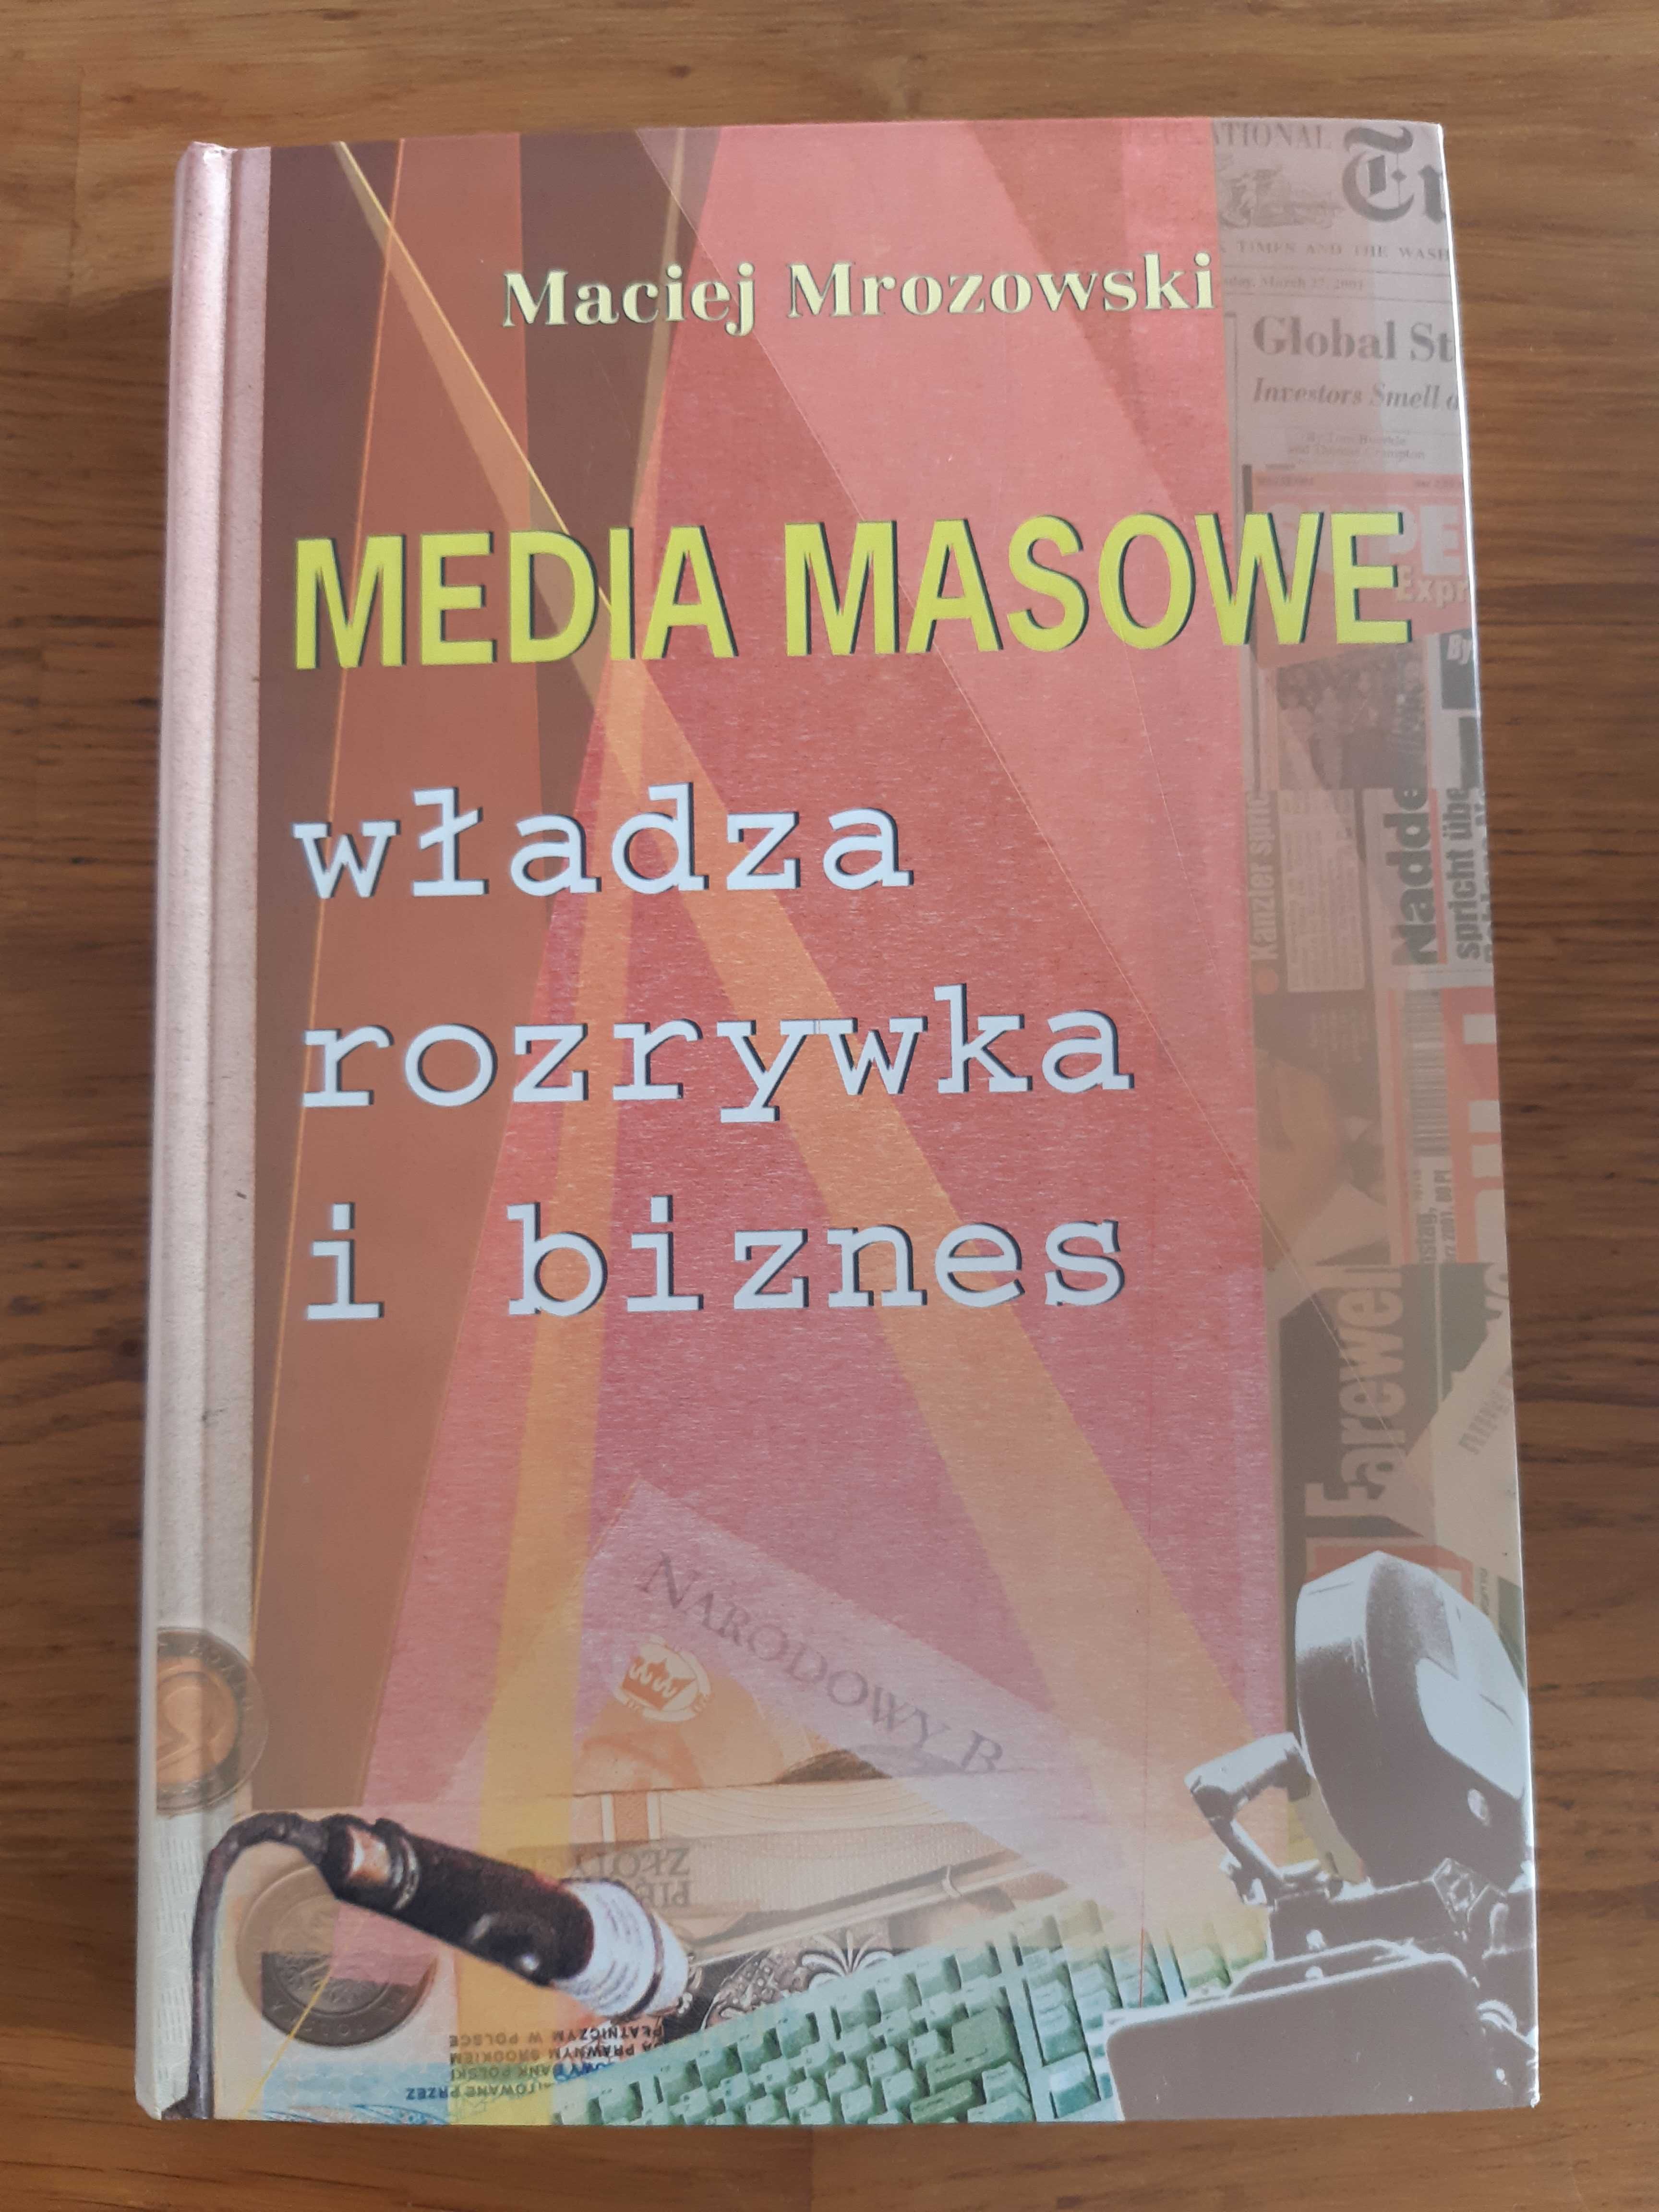 Media masowe. Maciej Mrozowski